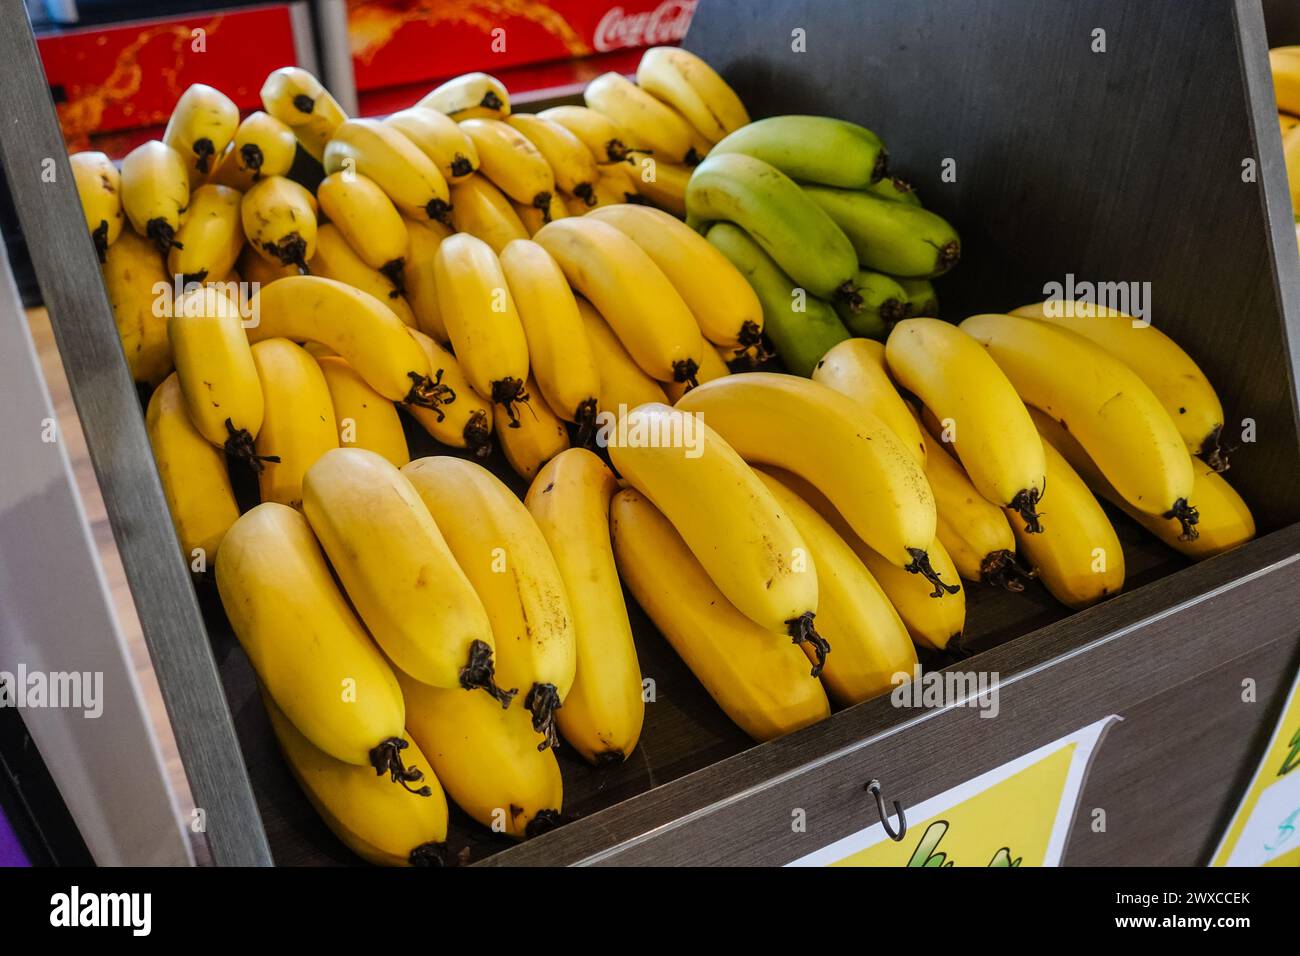 Les bananes de Coffs Harbour sont réputées pour leur goût et leur qualité exceptionnels en raison du climat et des conditions du sol uniques de la région. La sous-section de la zone Banque D'Images